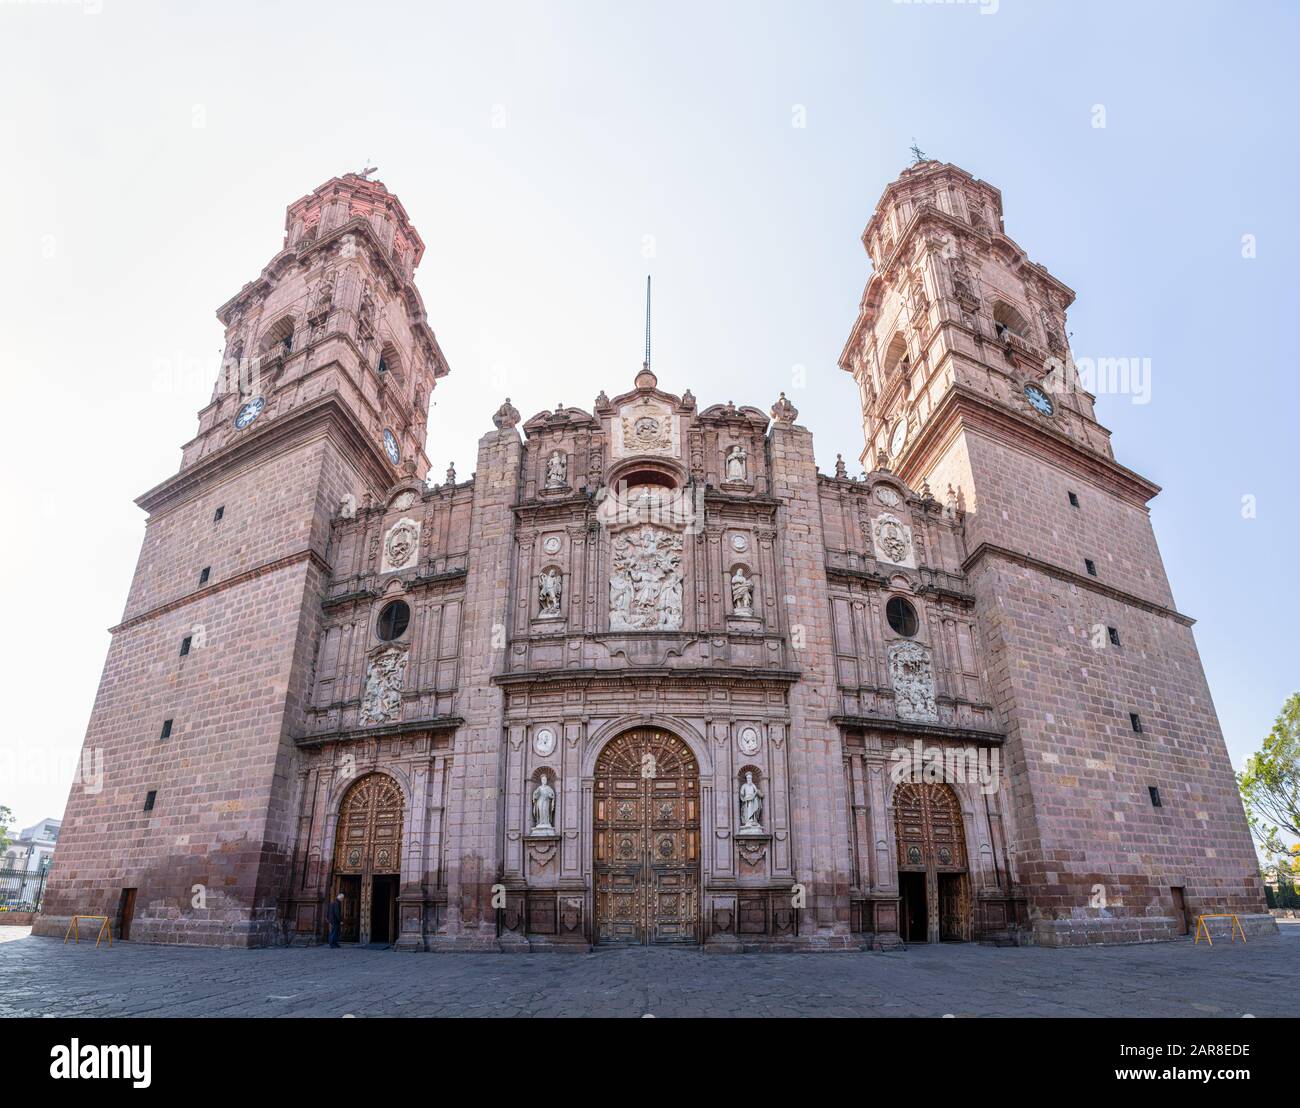 La cathédrale de Morelia, construit avec des pierres roses, dans la ville mexicaine de Morelia, État de Michoacan. Banque D'Images